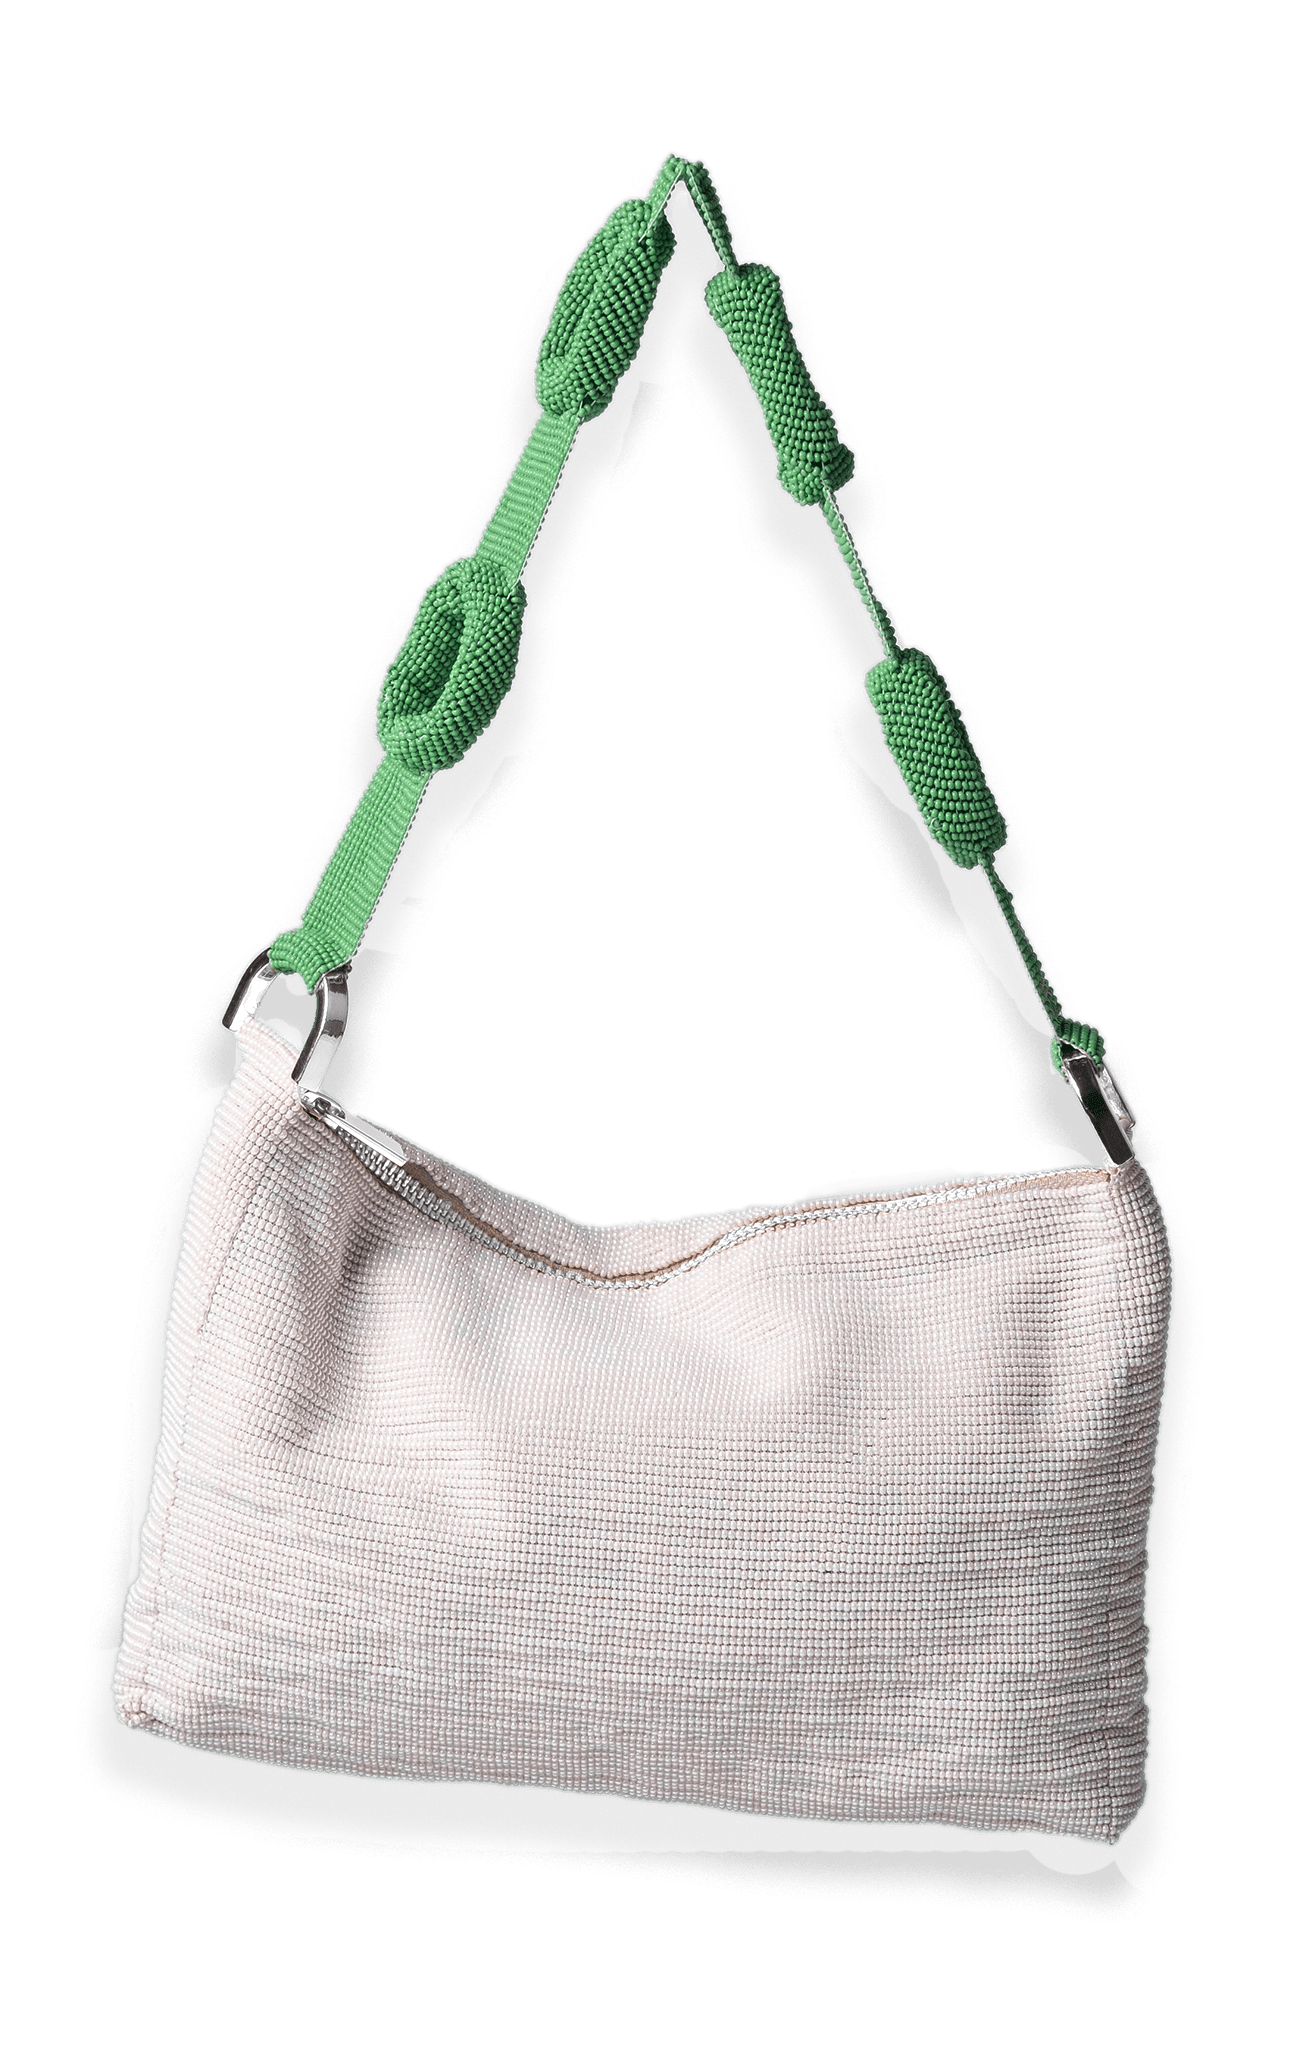 Liner for Loop Hobo Bag